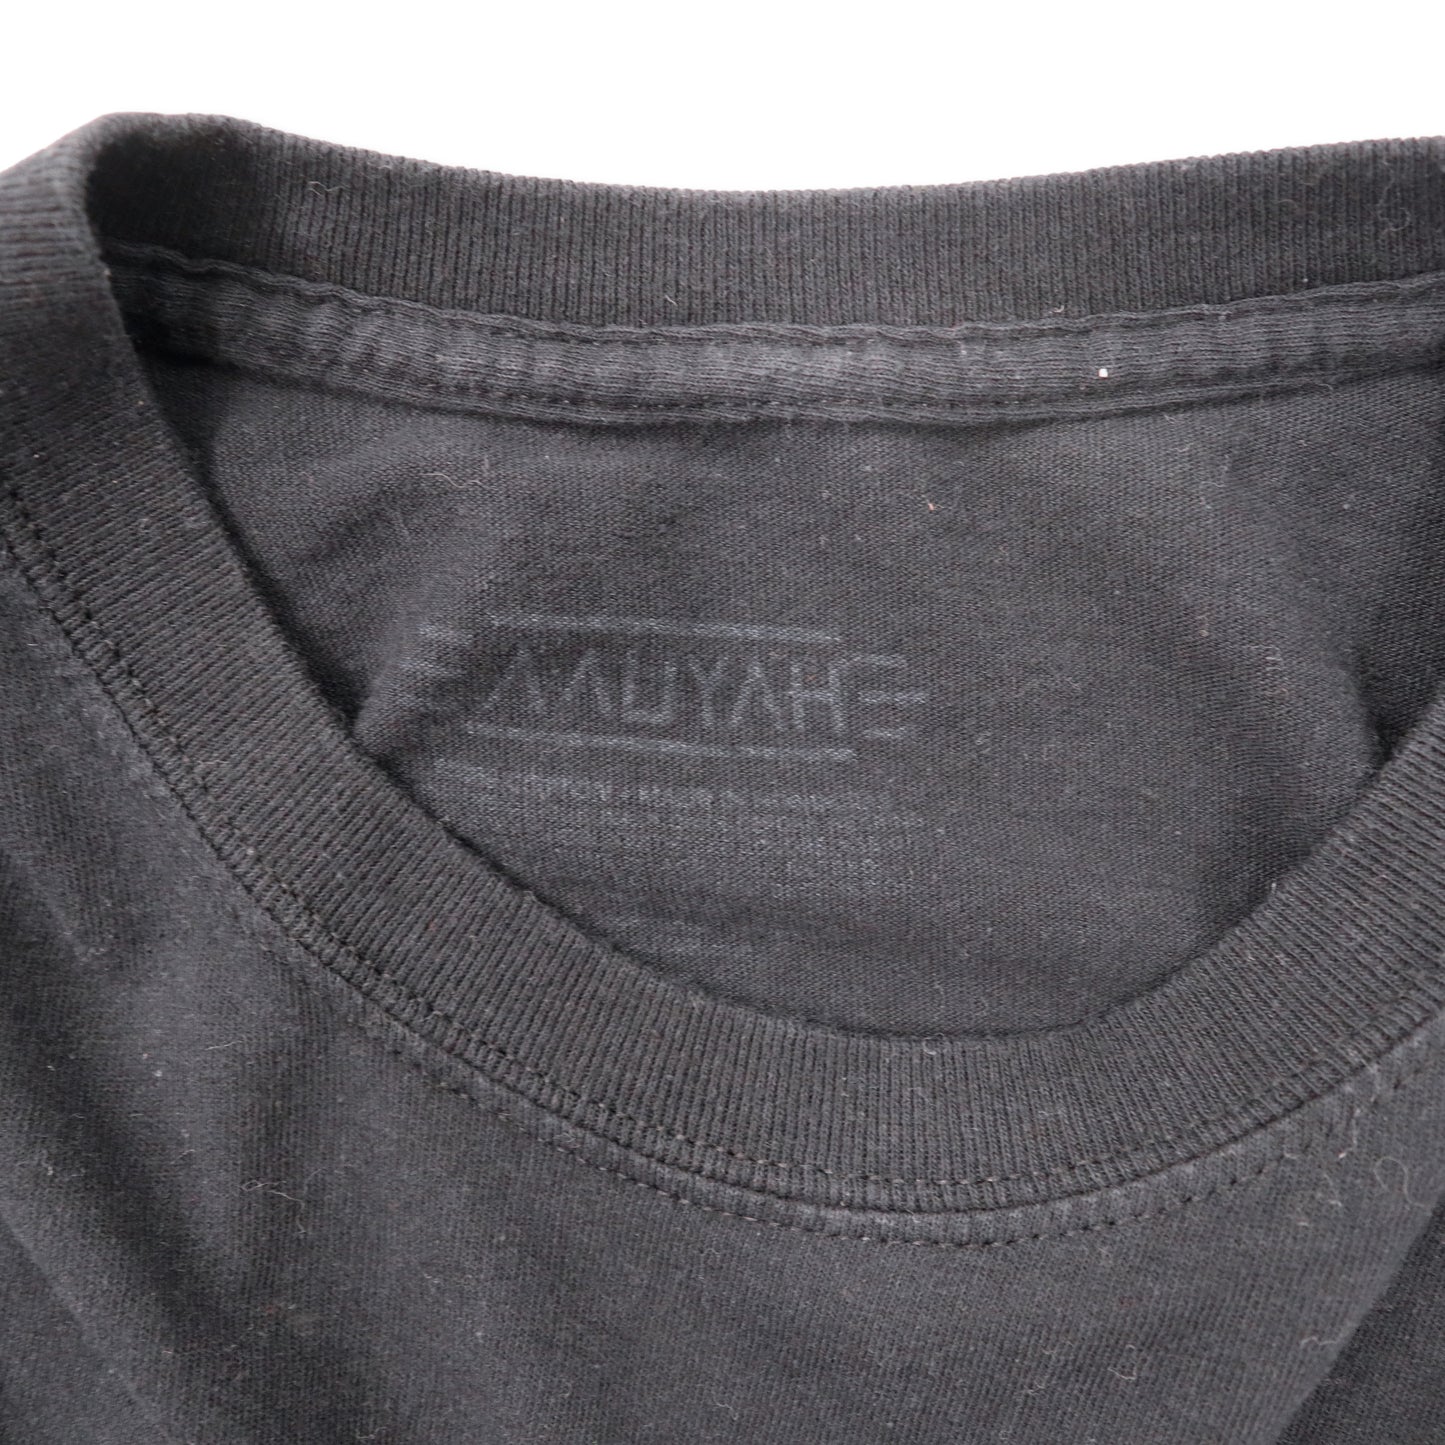 AALIYAH ラップ Tシャツ XL ブラック フォトプリント コットン ビッグサイズ